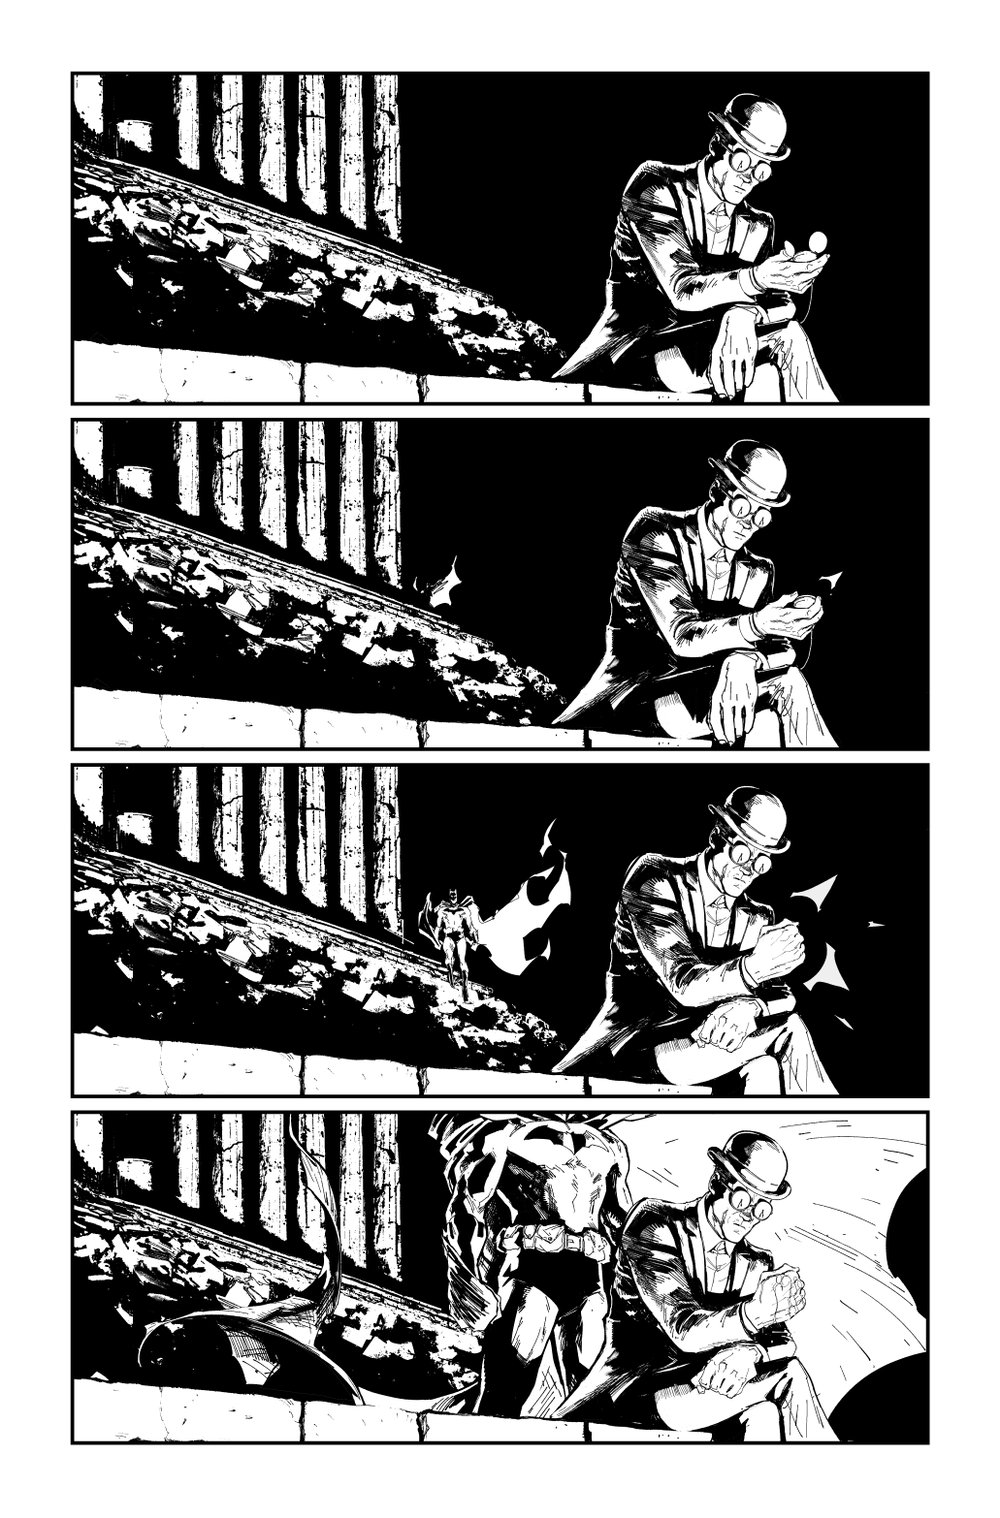 Image of BATMAN KILLING TIME #6 p.17